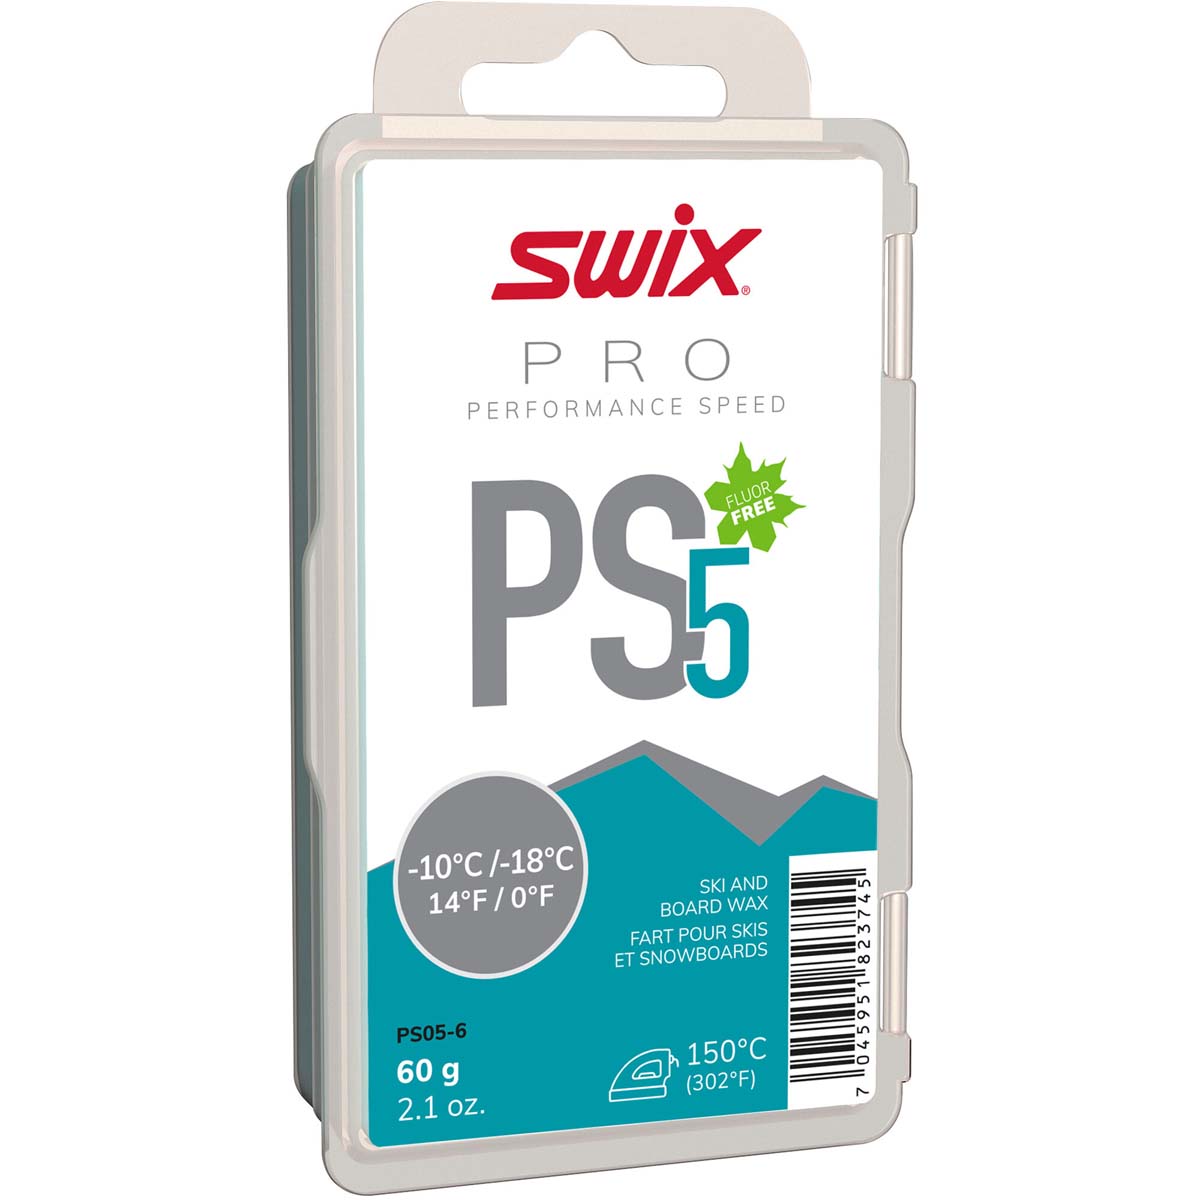 Skluzný vosk Swix Performance Speed, PS5 tyrkysový, -10°C/-18°C, 60g